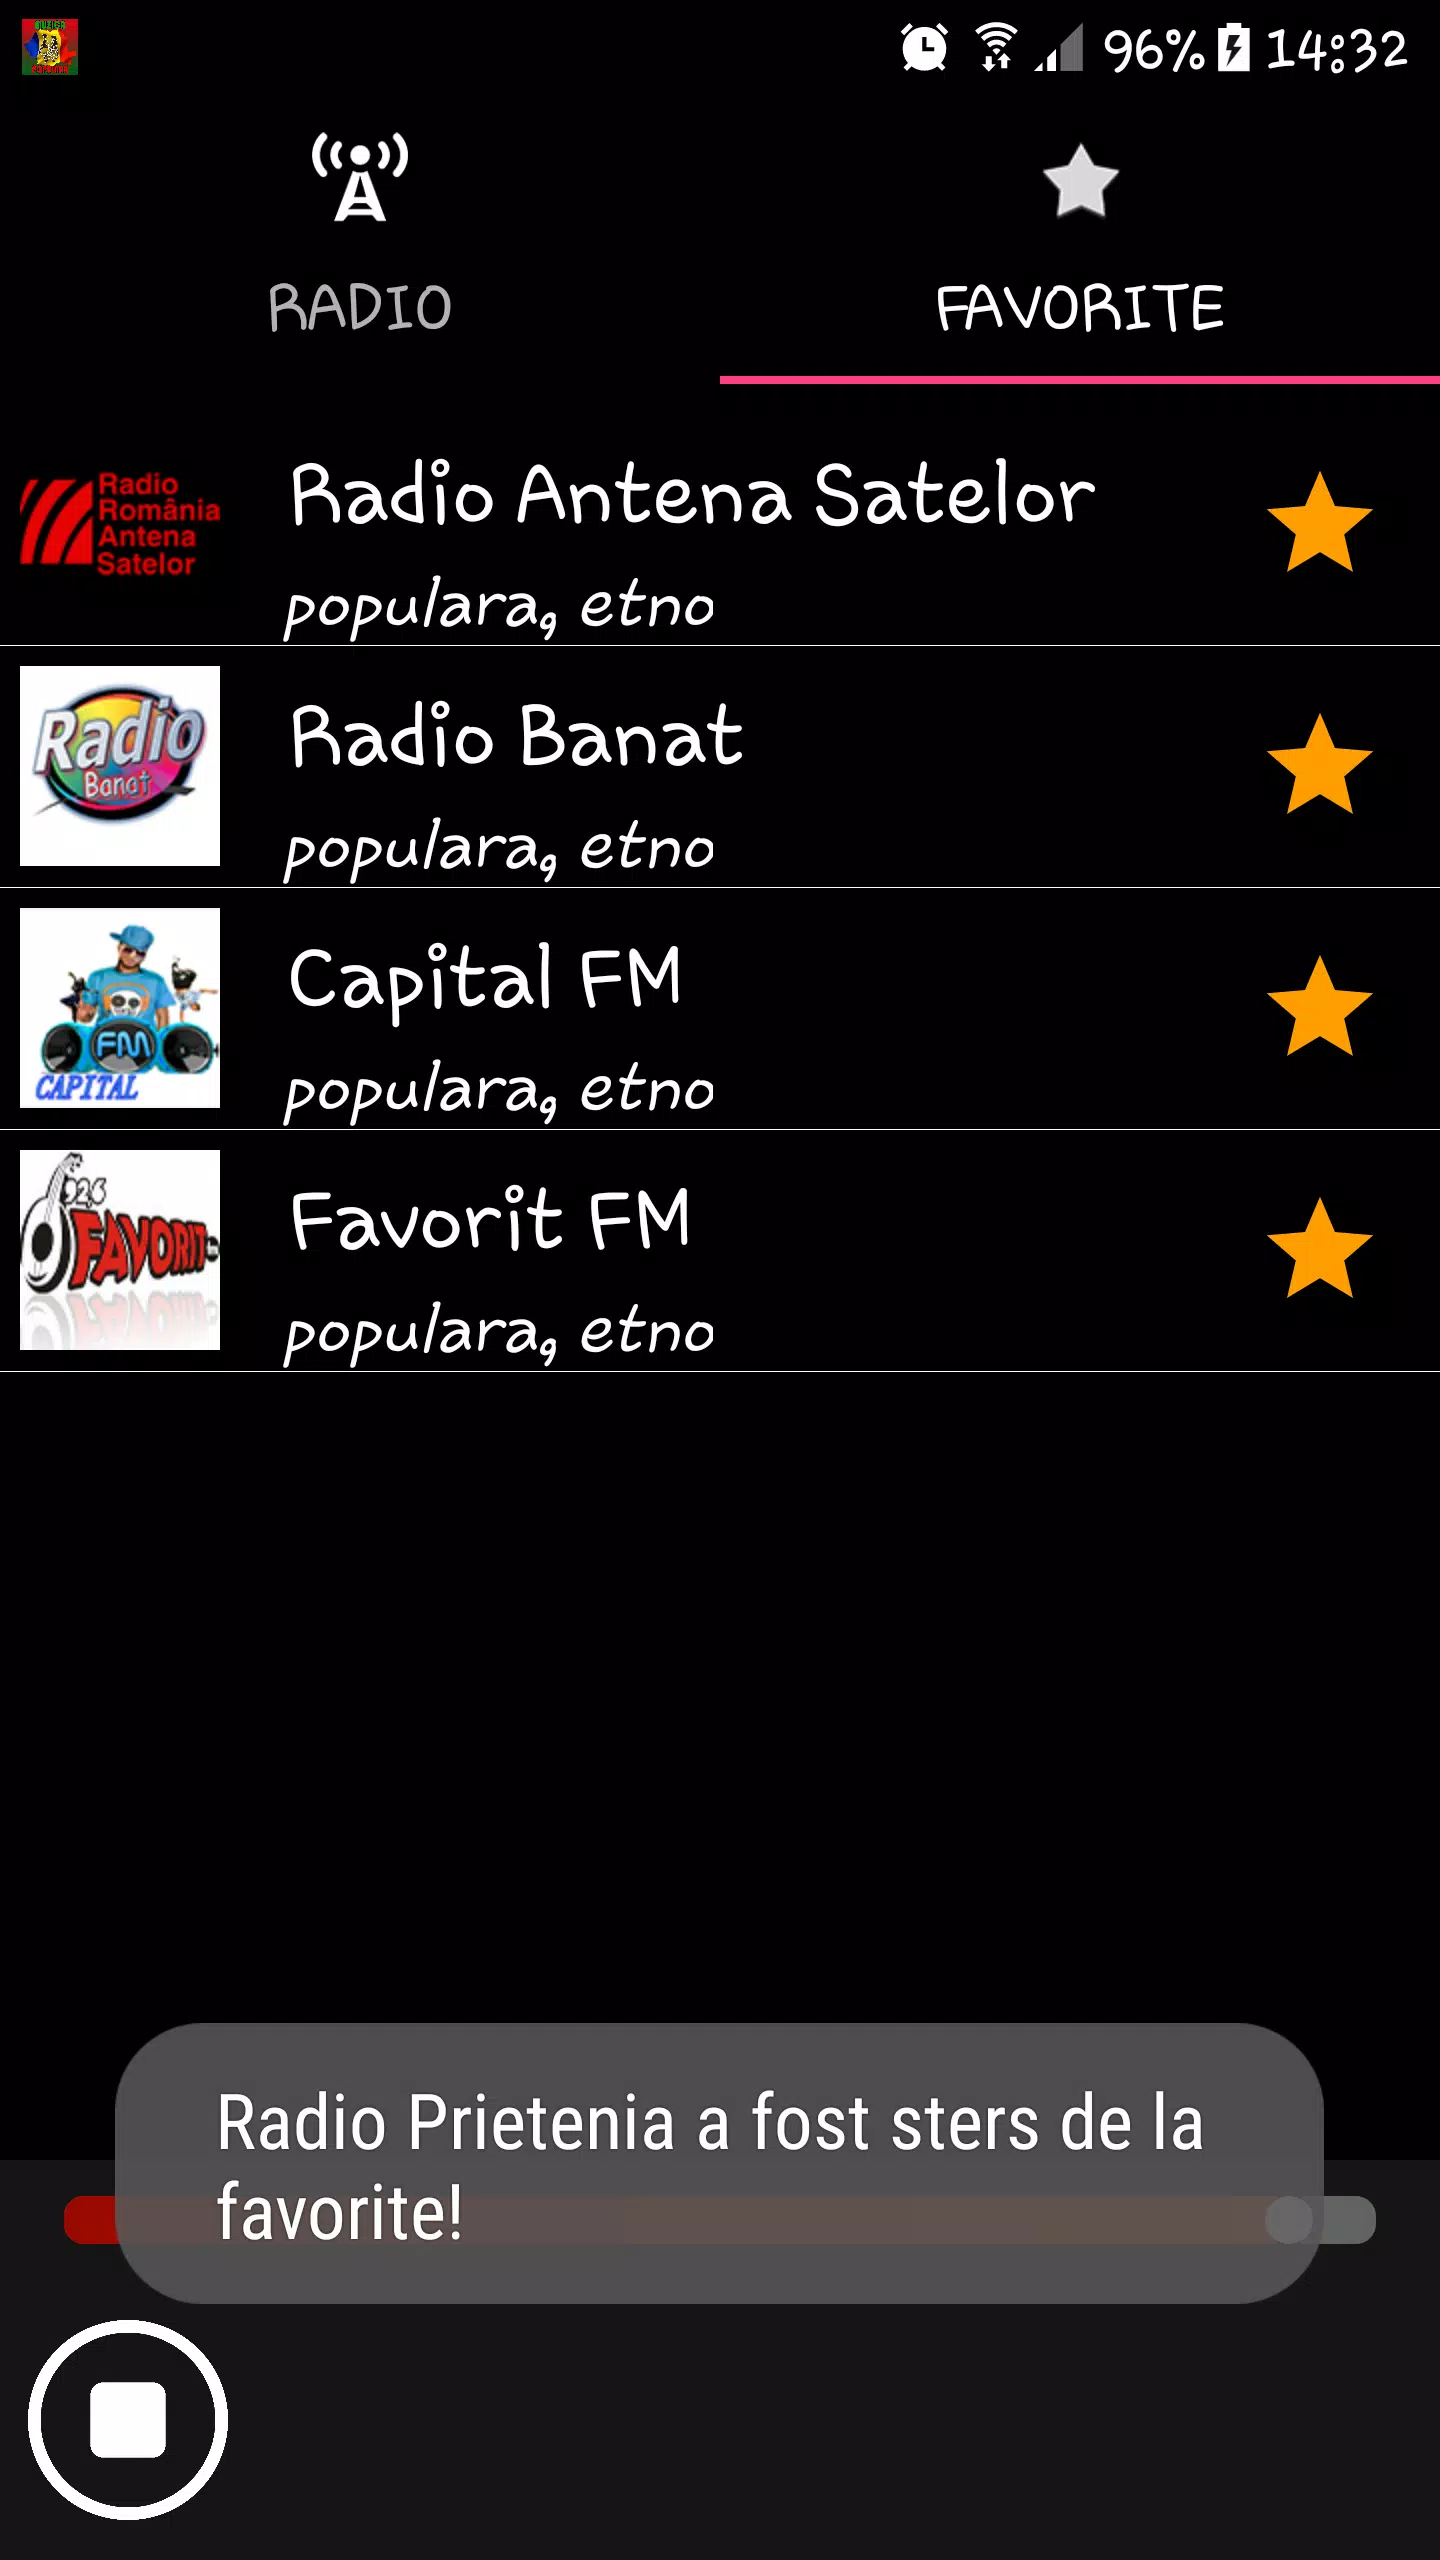 Muzica Populara APK per Android Download